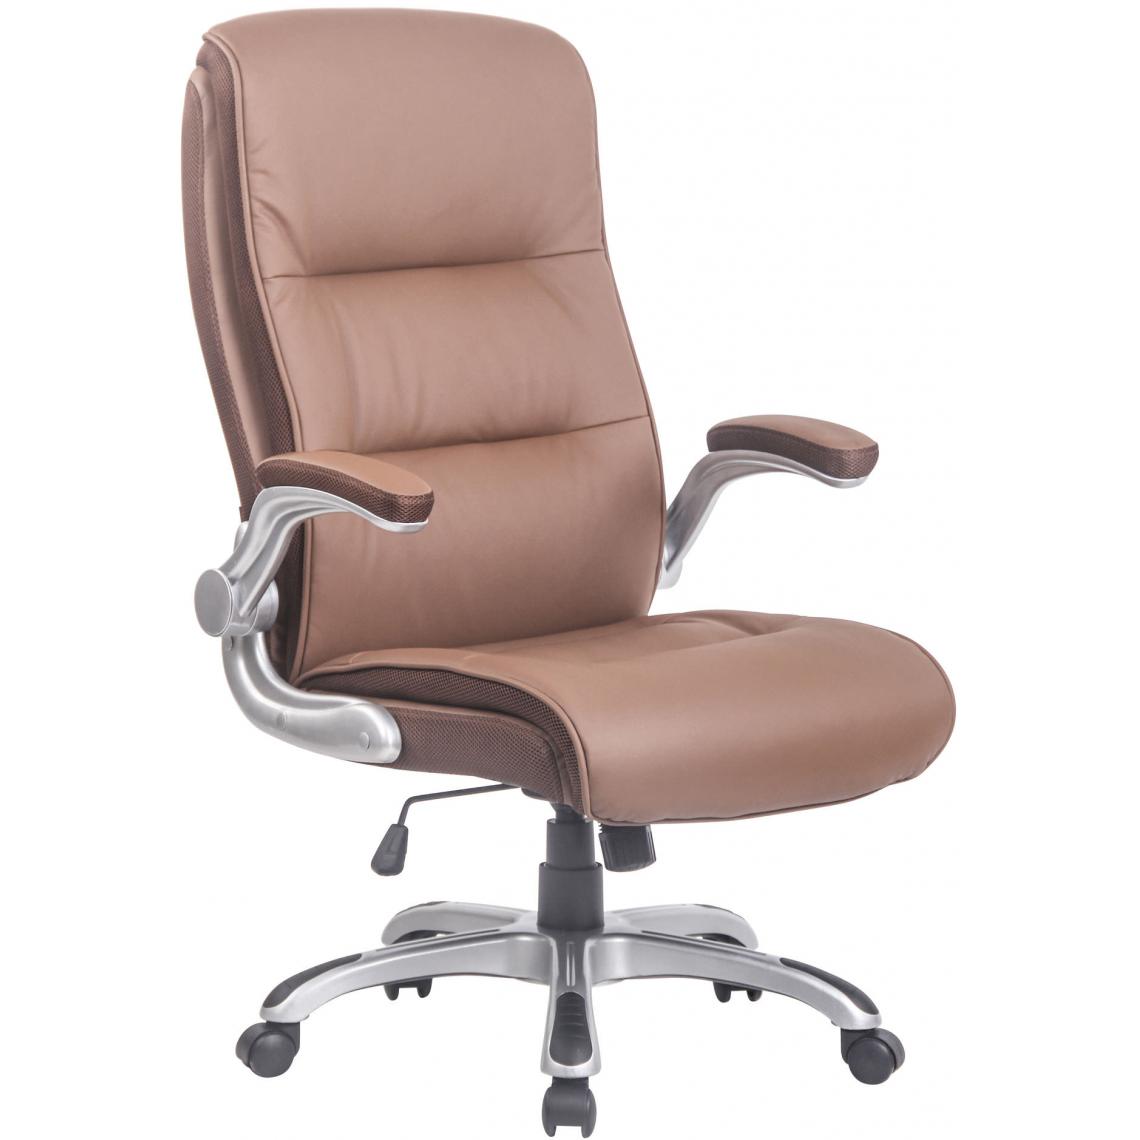 Icaverne - Admirable Chaise de bureau famille Budapest Villach couleur brun clair - Chaises